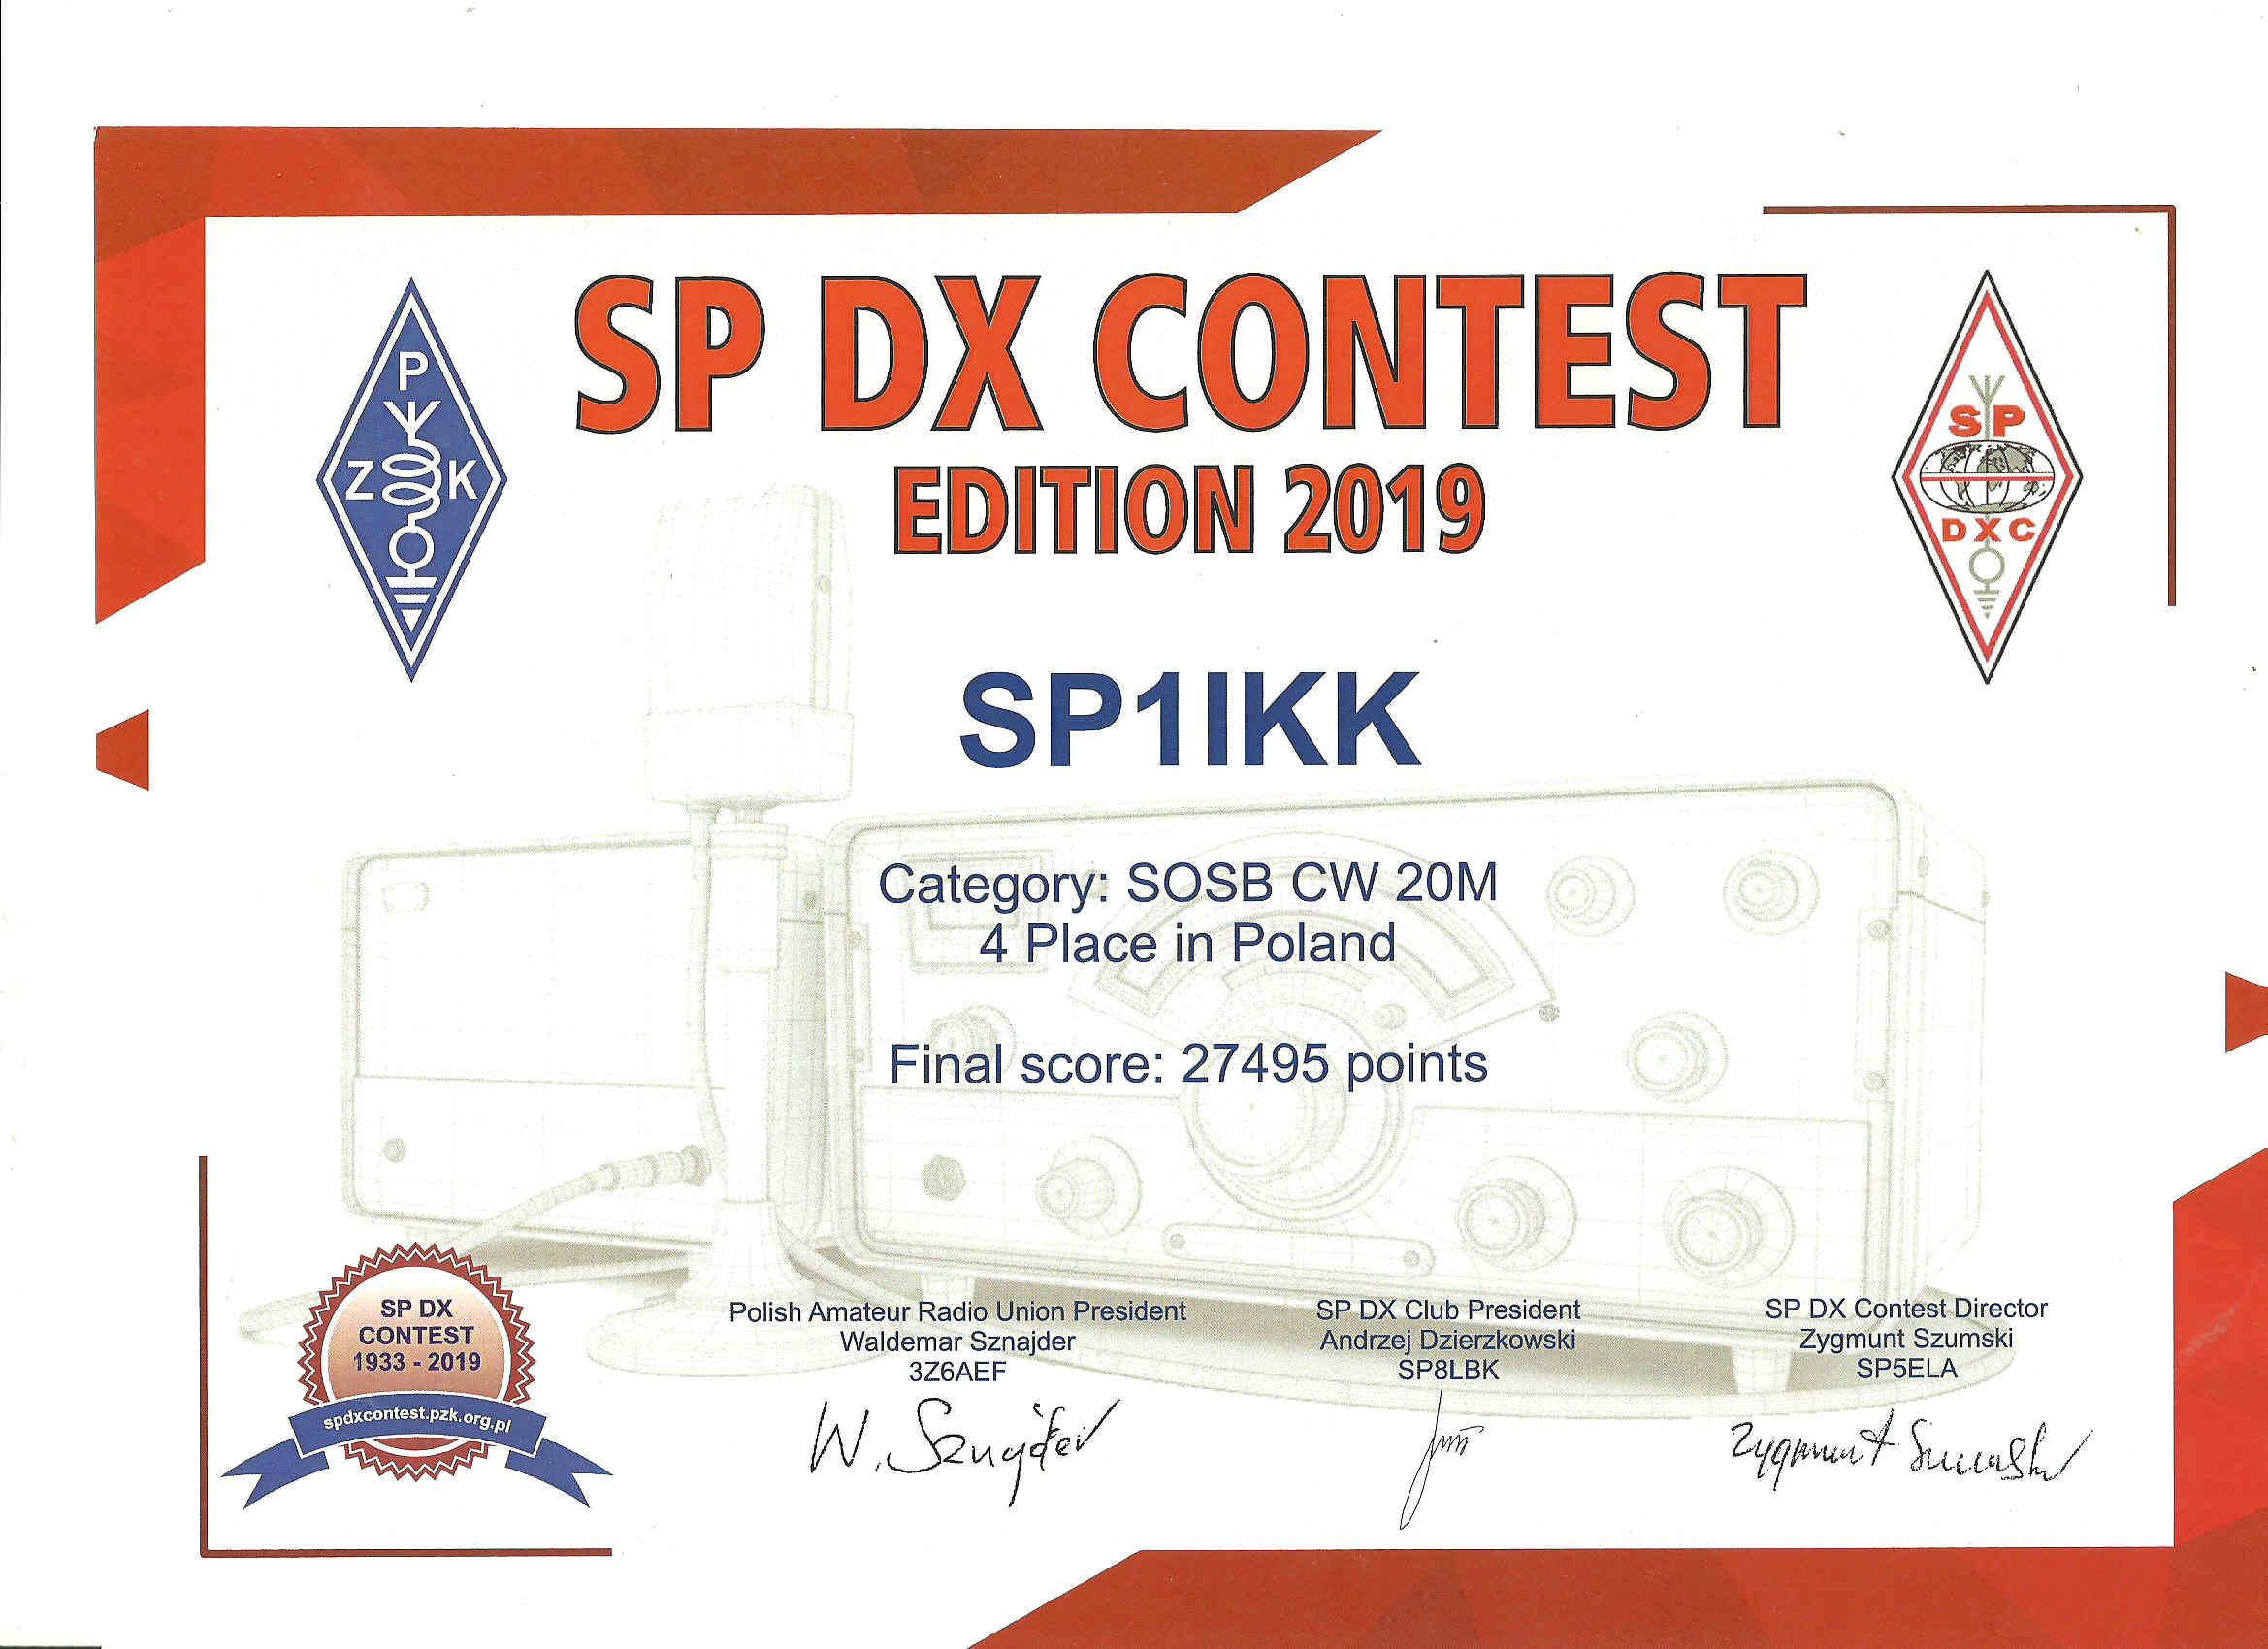 Images: sp1ikk sp dx .jpg